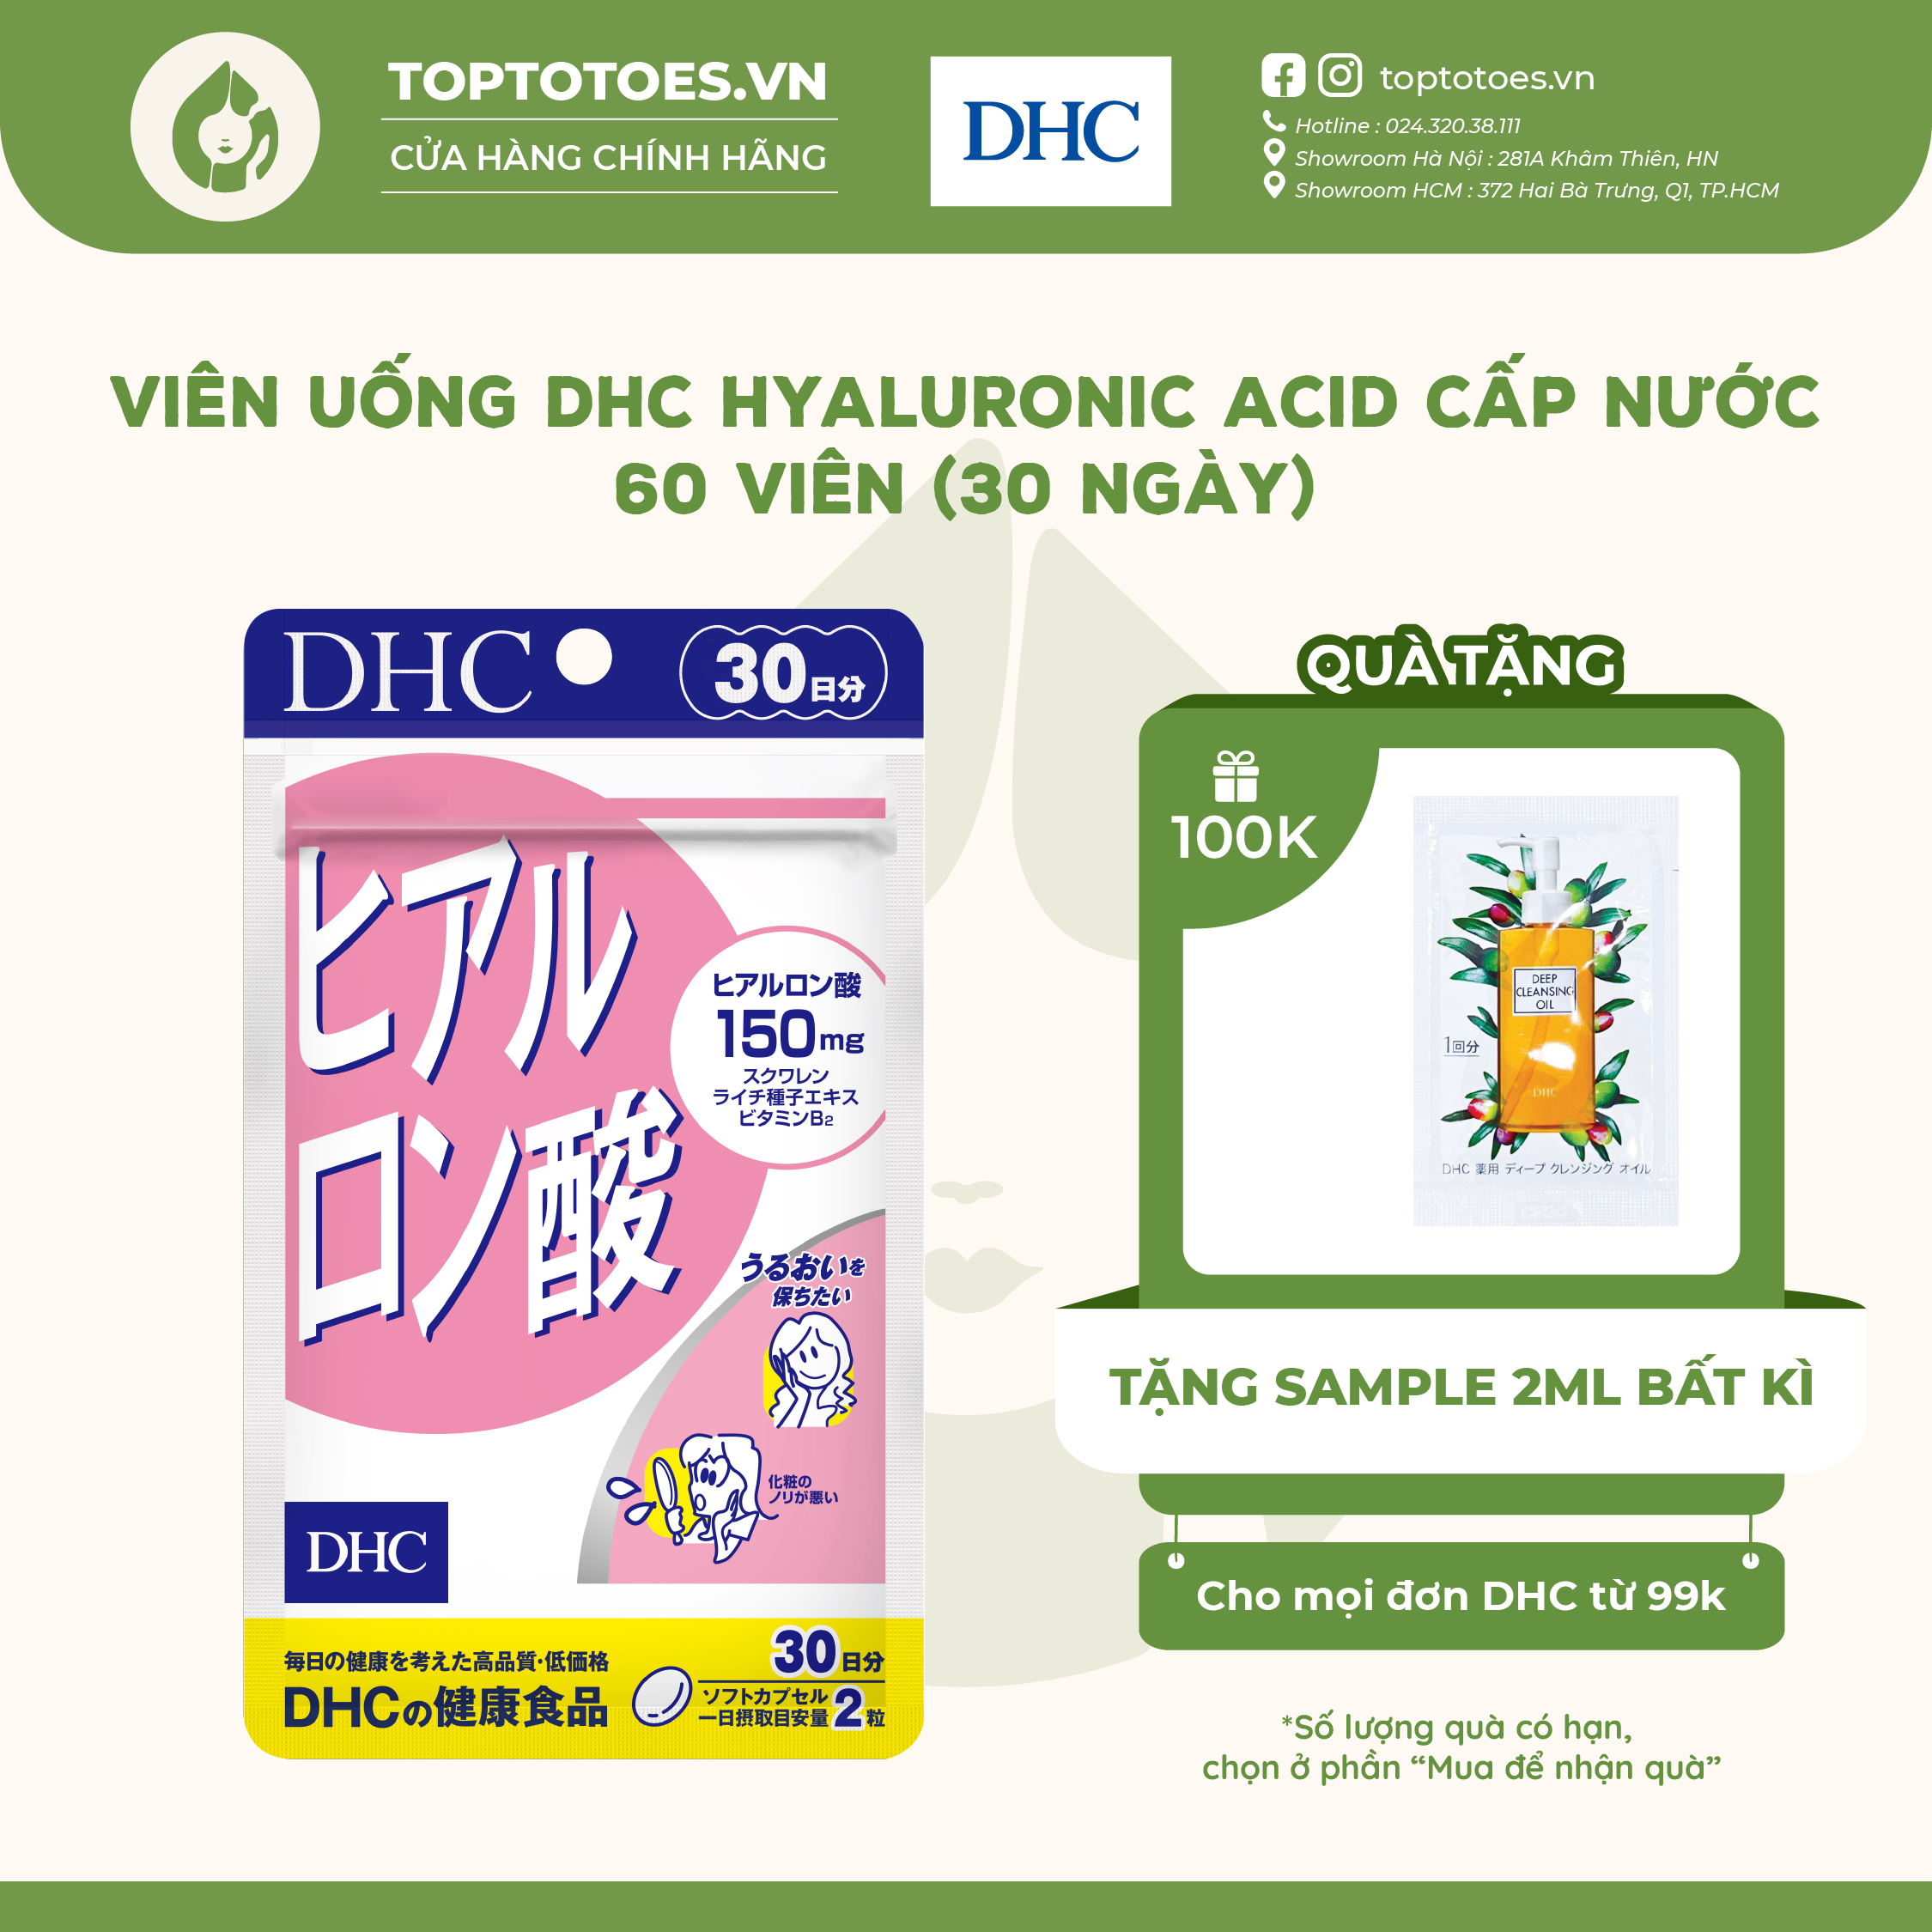 Viên uống DHC Hyaluronic Acid giúp cấp nước, giữ ẩm